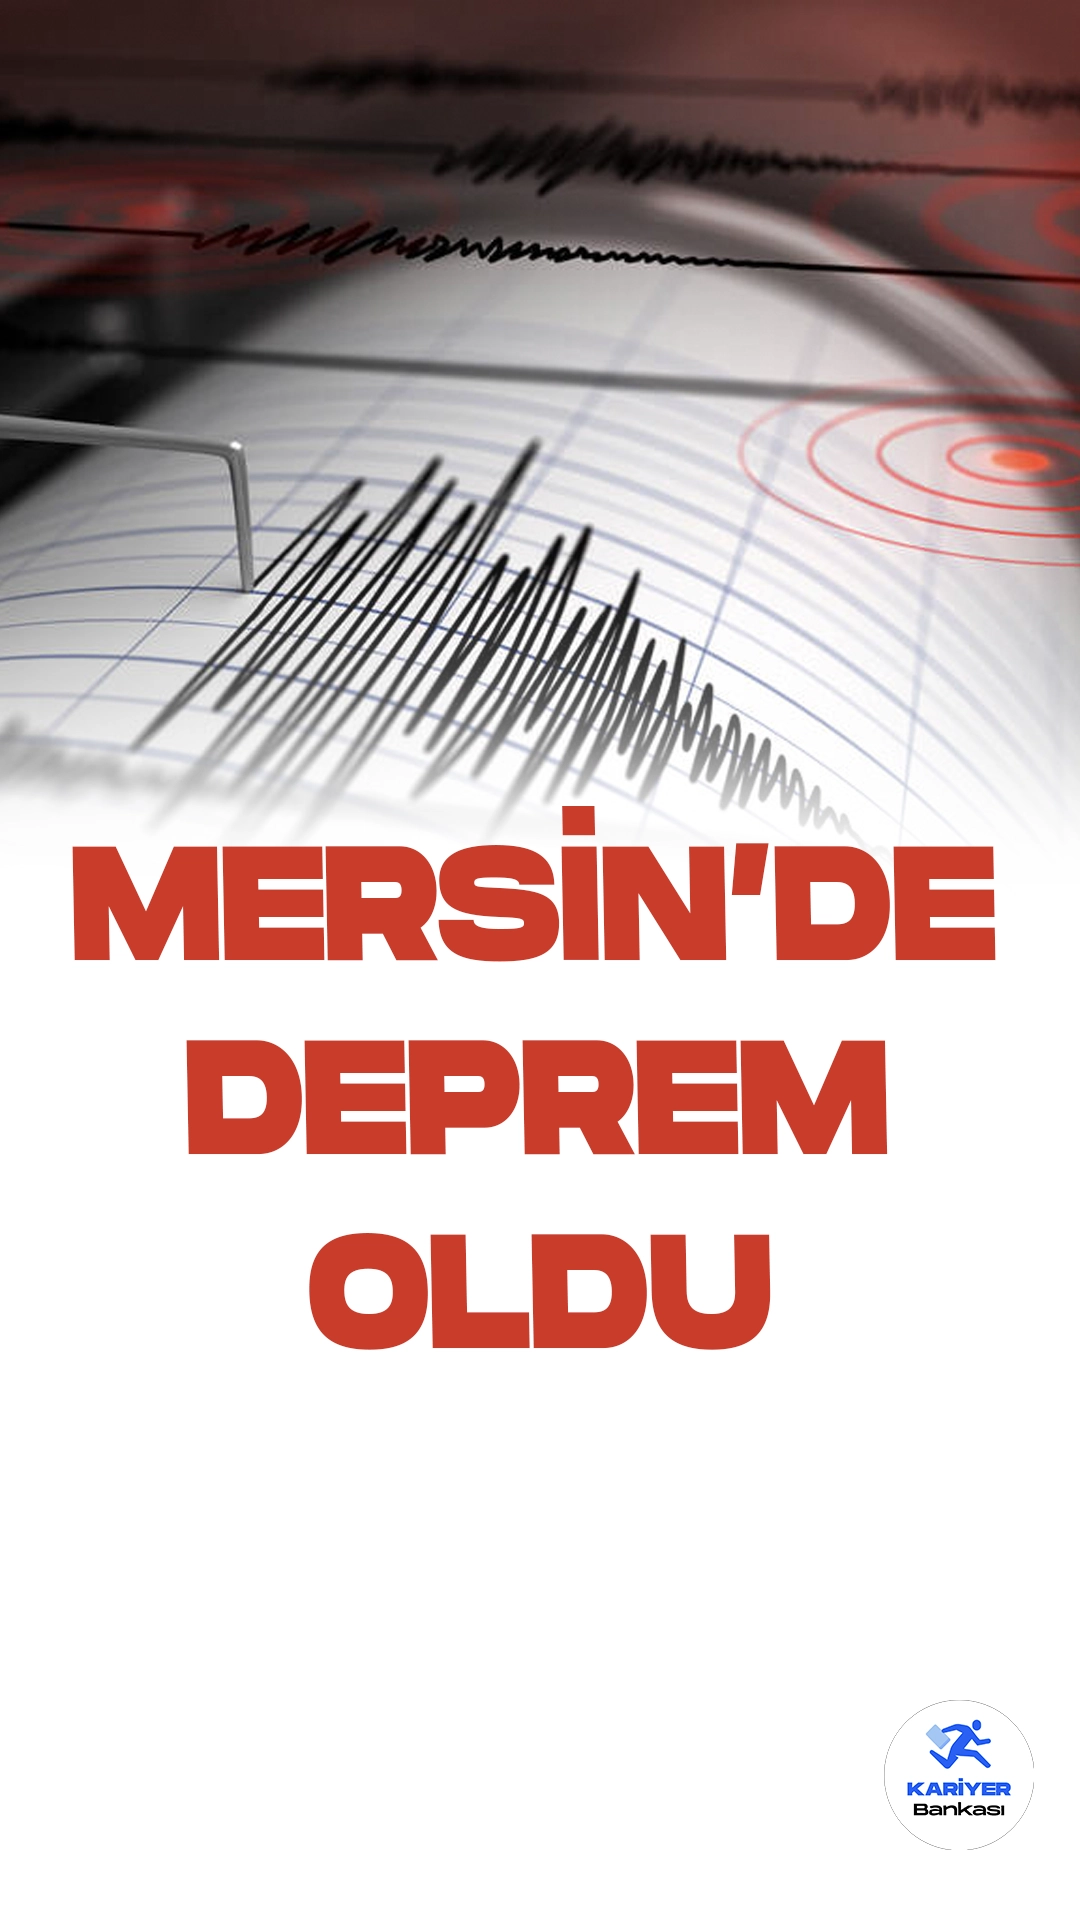 Mersin'de 3.5 Büyüklüğünde Deprem Oldu. İçişleri Bakanlığı Afet ve Acil Durum Yönetimi Başkanlığı Deprem Dairesi resmi sayfasından yayımlanan son dakika duyurusunda Mersin'de 3.5 büyüklüğünde deprem meydana geldiği aktarıldı.